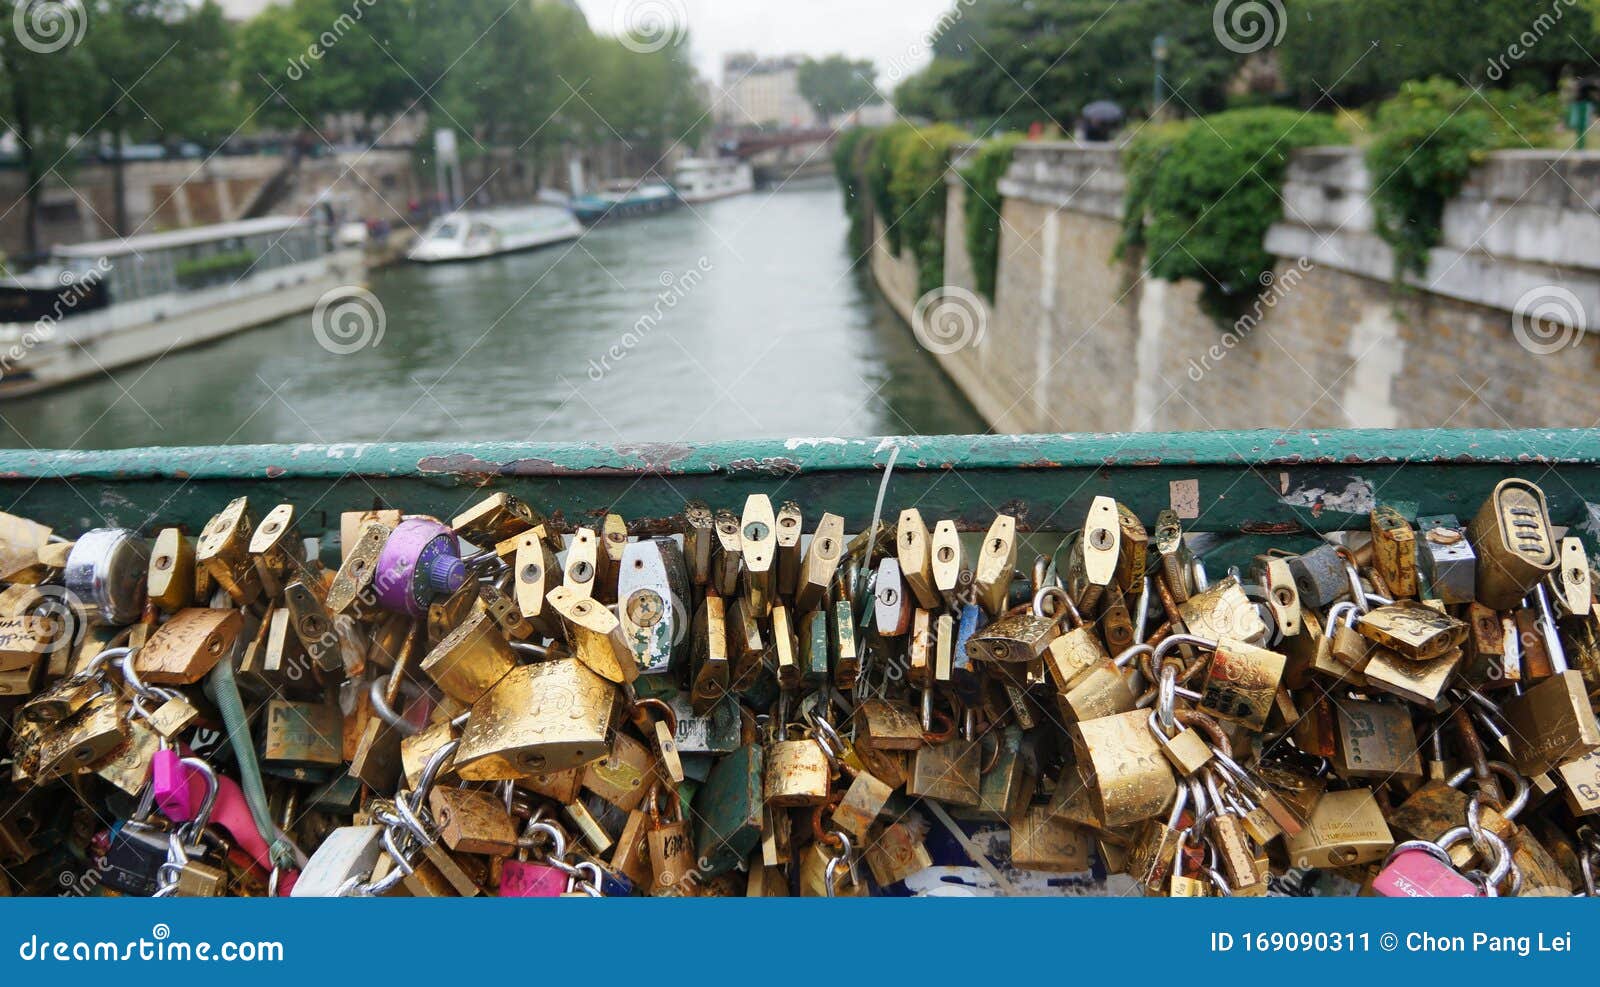 爱锁桥在法国编辑类照片 图片包括有爱锁桥在法国